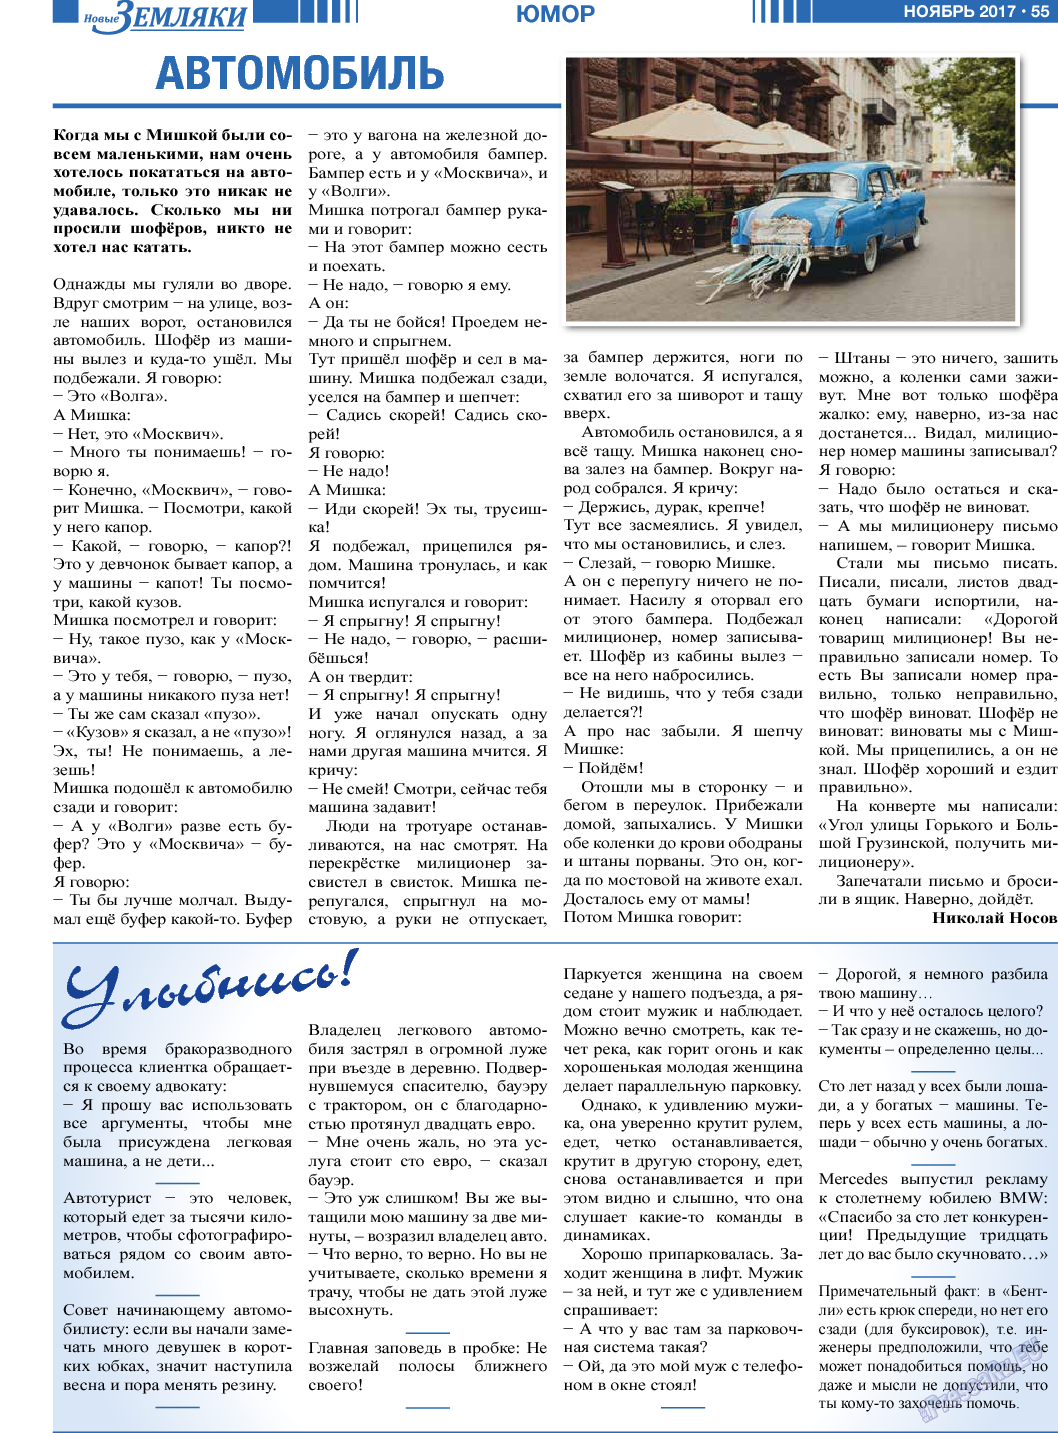 Новые Земляки (газета). 2017 год, номер 11, стр. 55